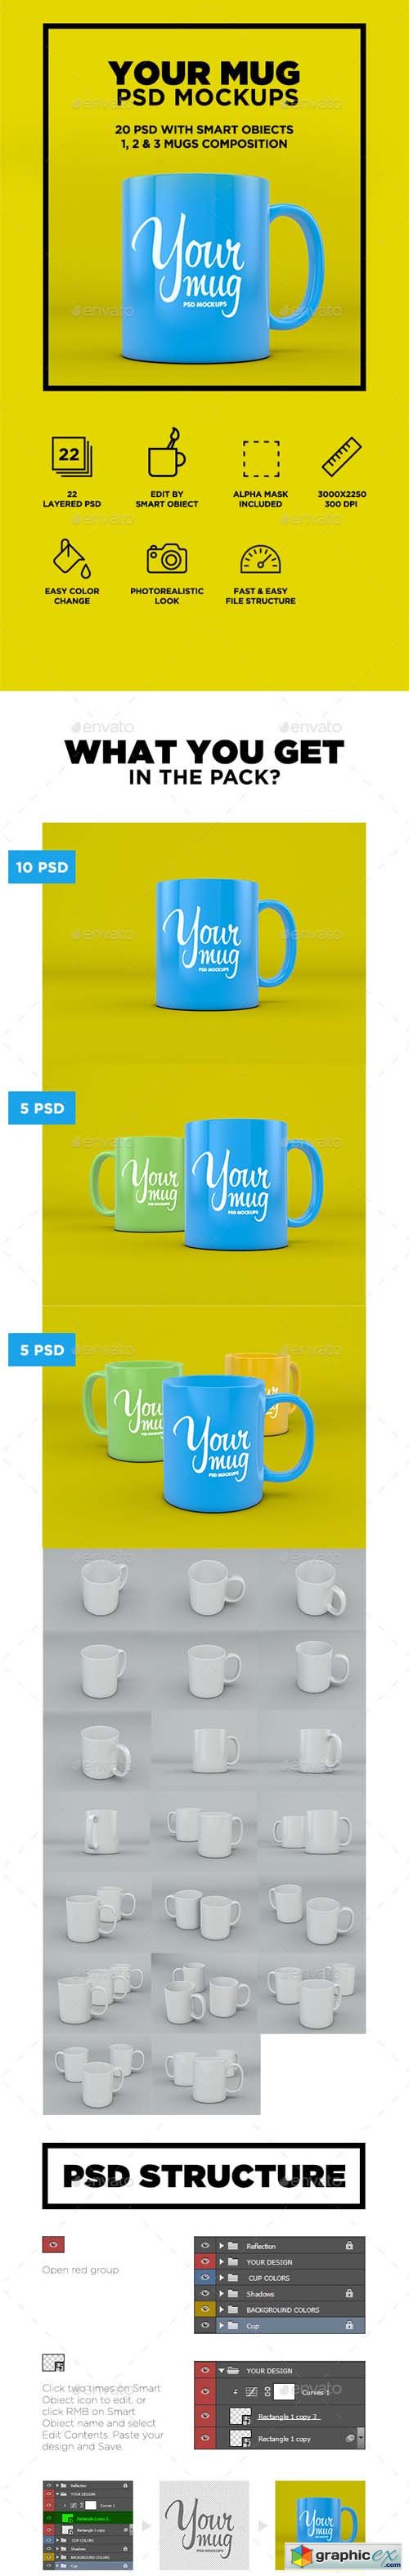 Your Mug - PSD Mockup 9412502